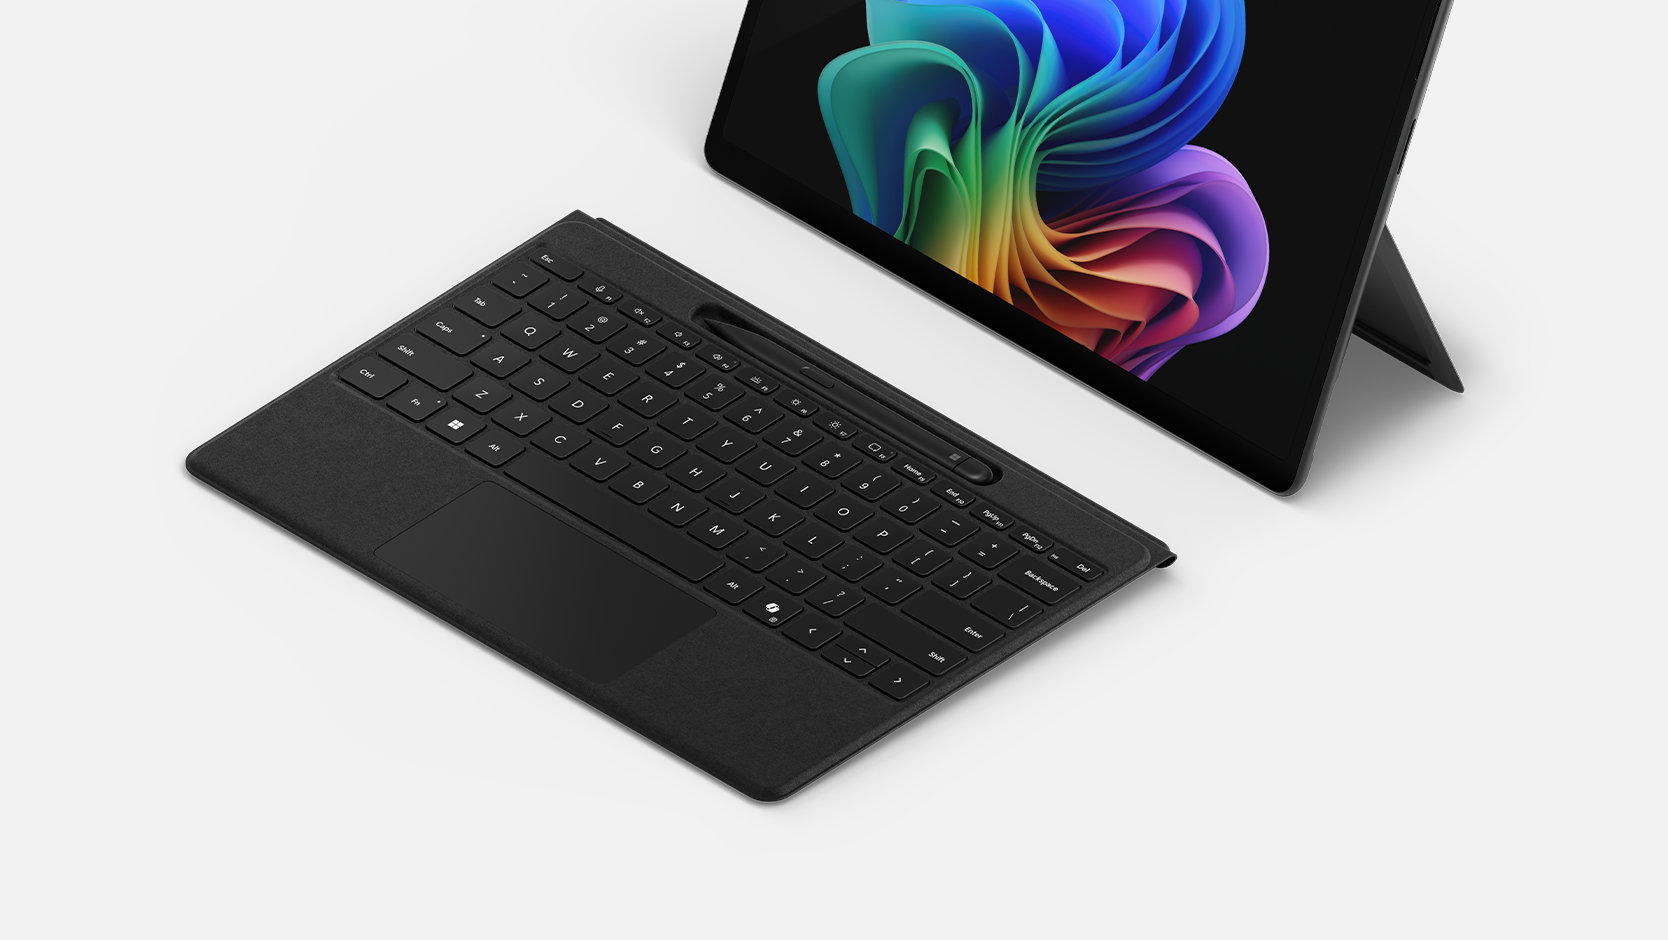 Grande plano a apresentar um Teclado Flex para Surface Pro com Slim Pen a funcionar destacado de um dispositivo Surface.